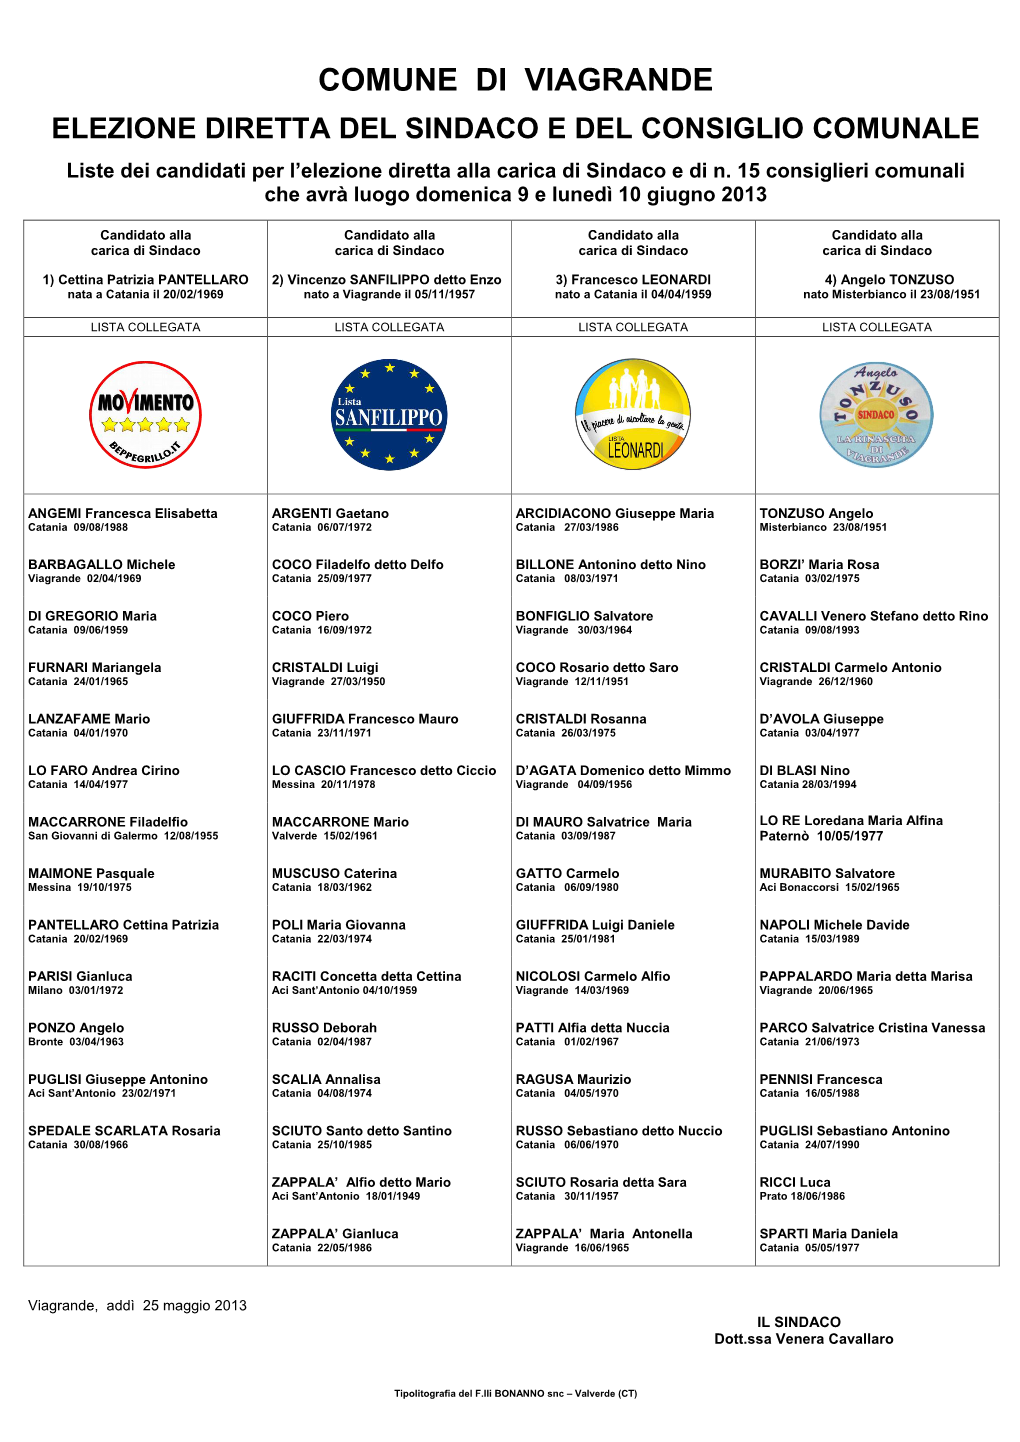 Liste Dei Candidati Per L'elezione Diretta Alla Carica Di Sindaco E Di N. 15 Consiglieri Comunali Che Avrà Luogo Domenica 9 E Lunedì 10 Giugno 2013